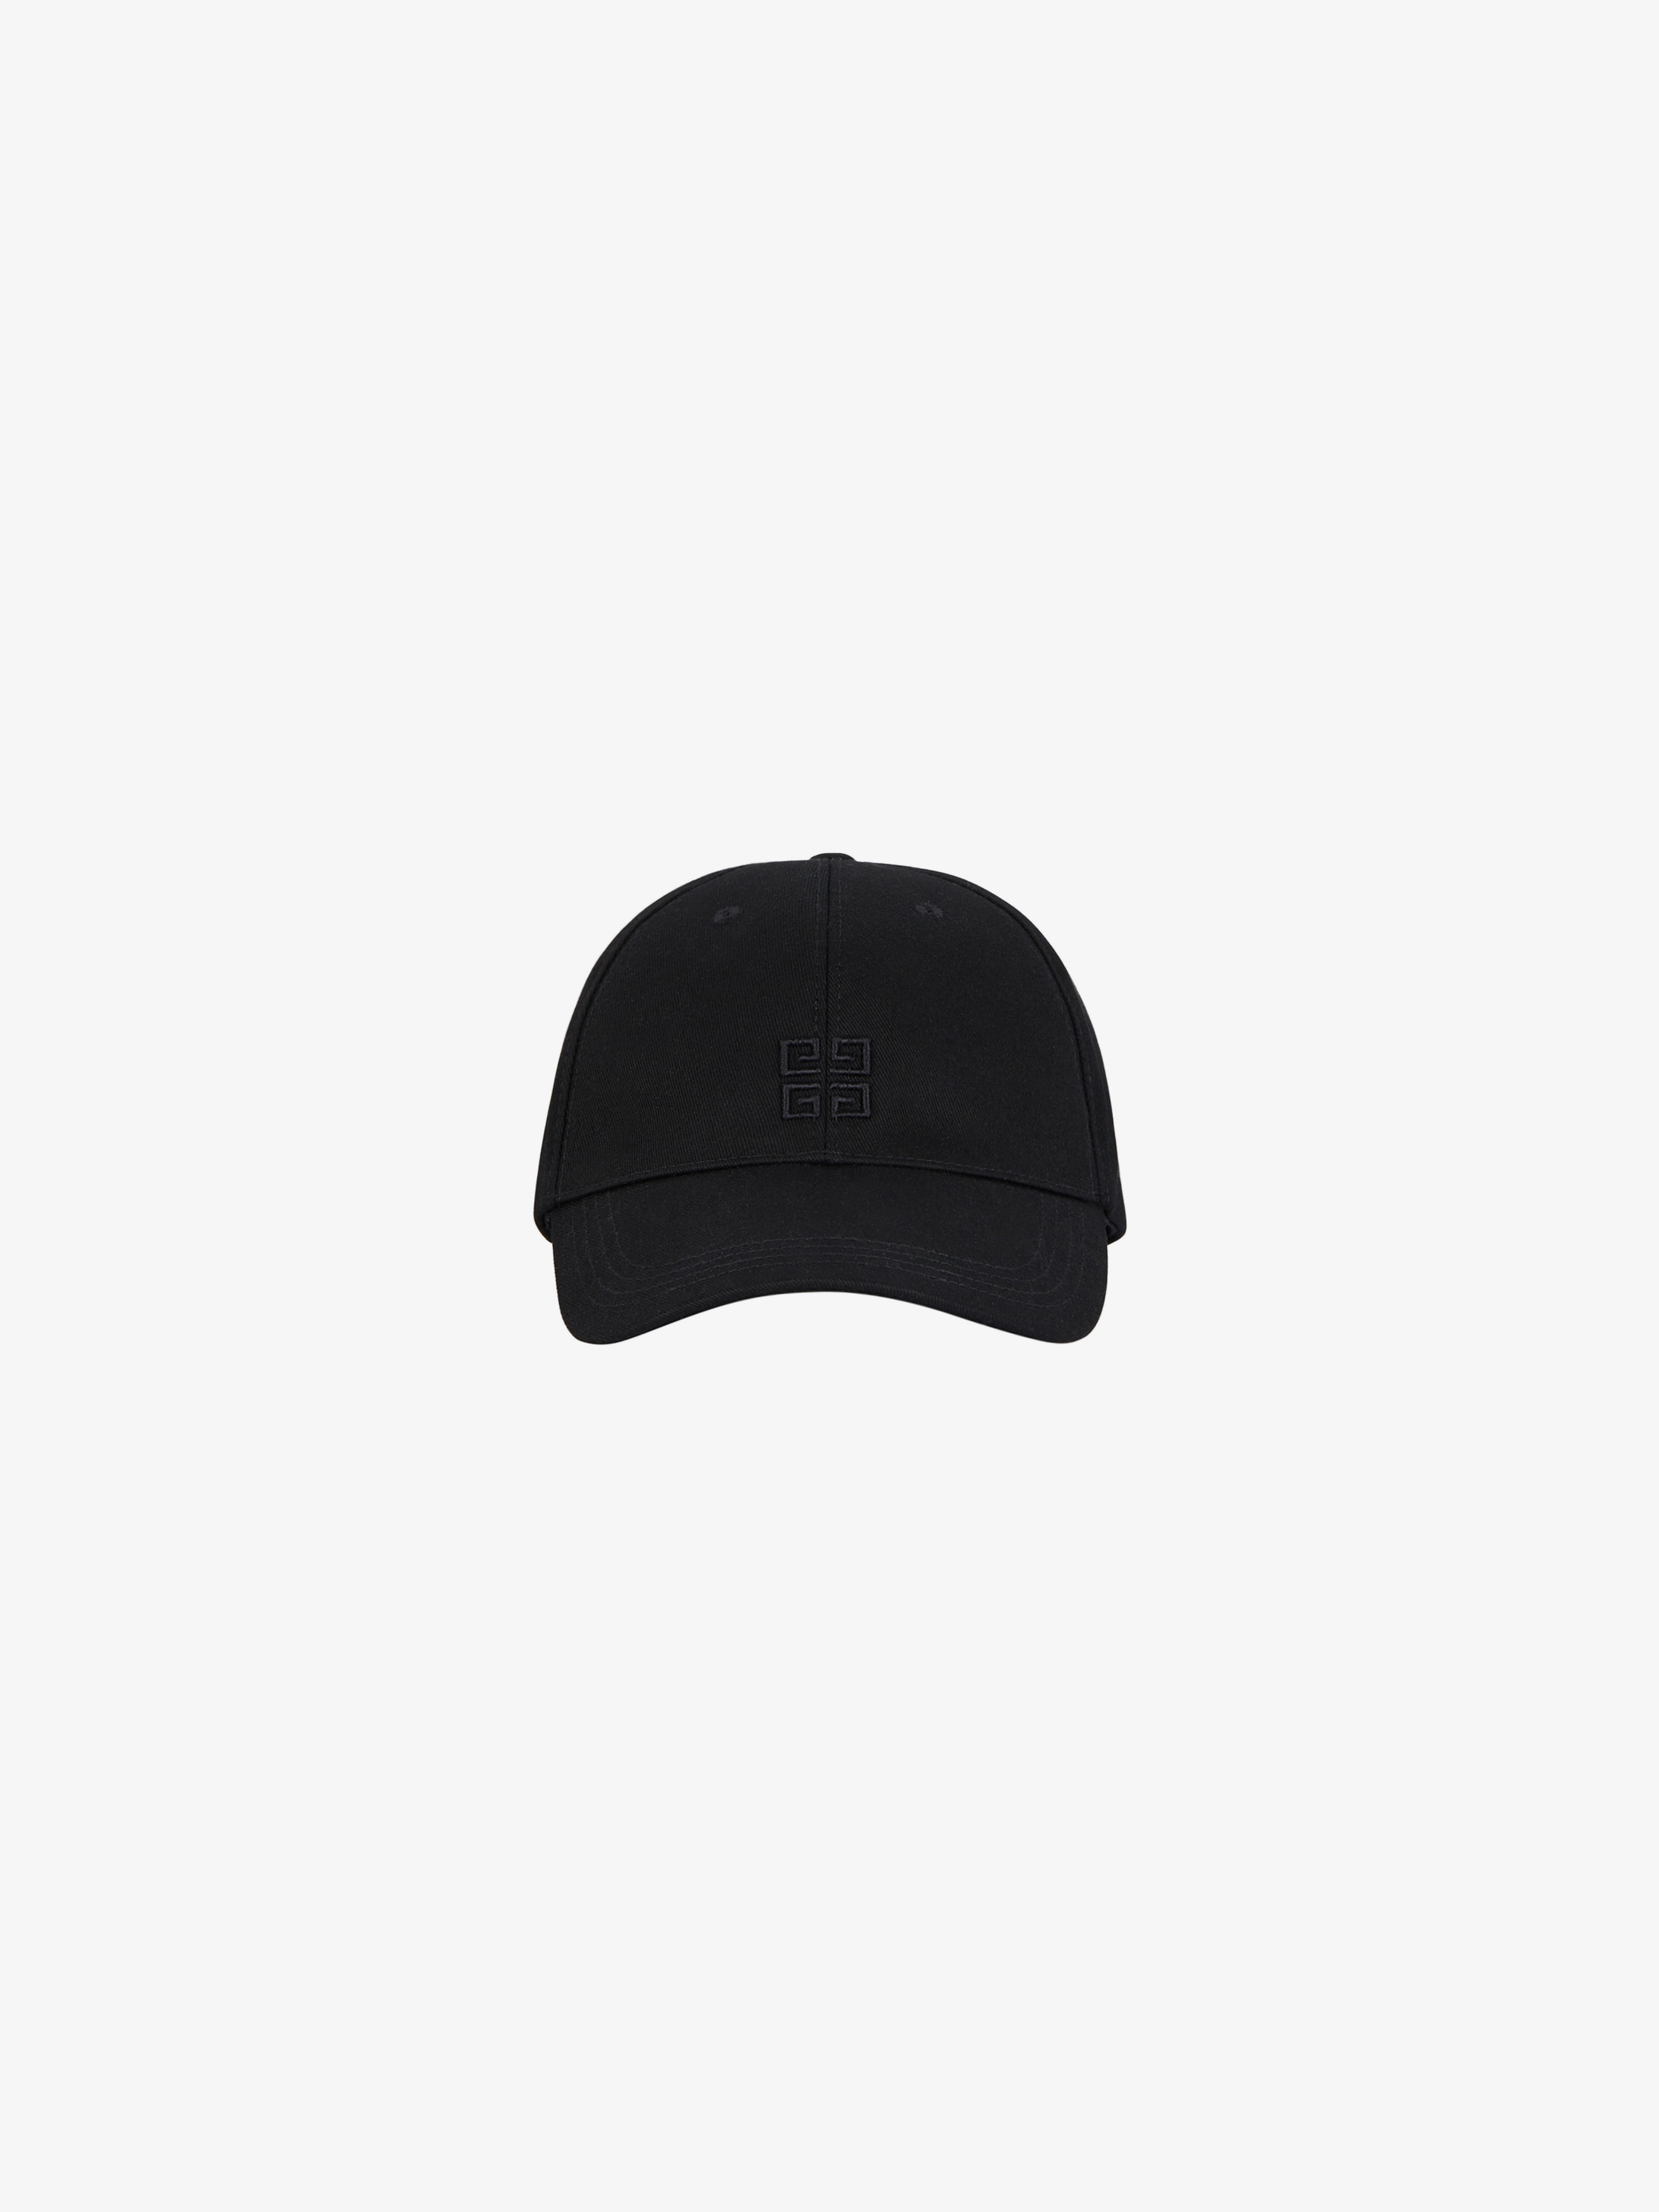 givenchy 4g cap